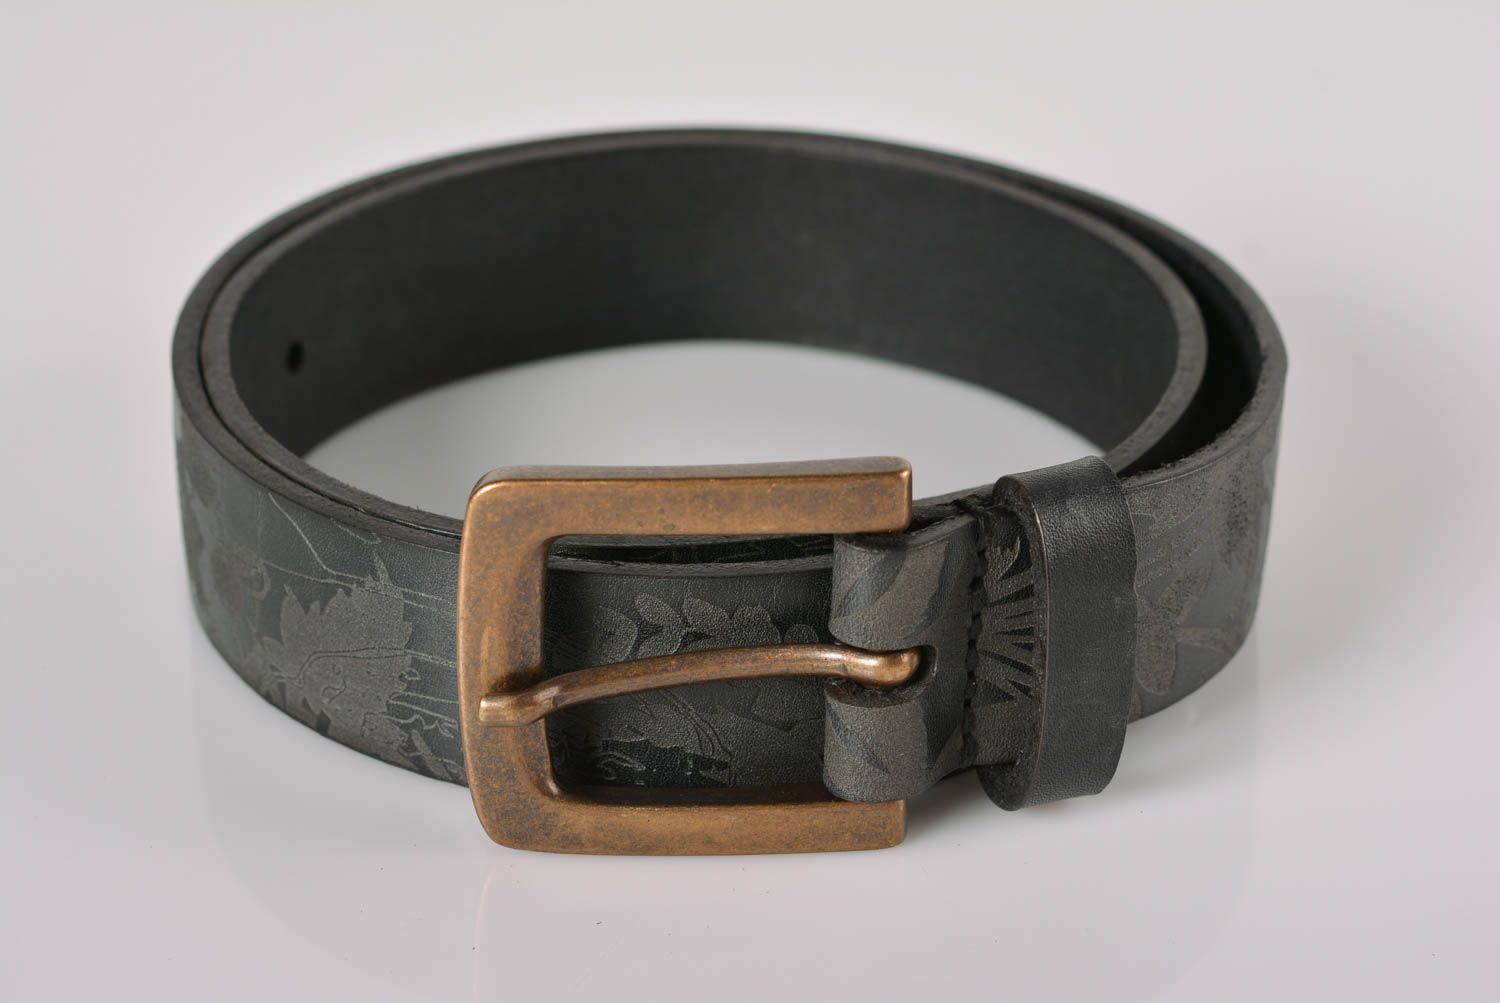 Cinturón de cuero artesanal ropa masculina inusual bonita accesorio de moda foto 1